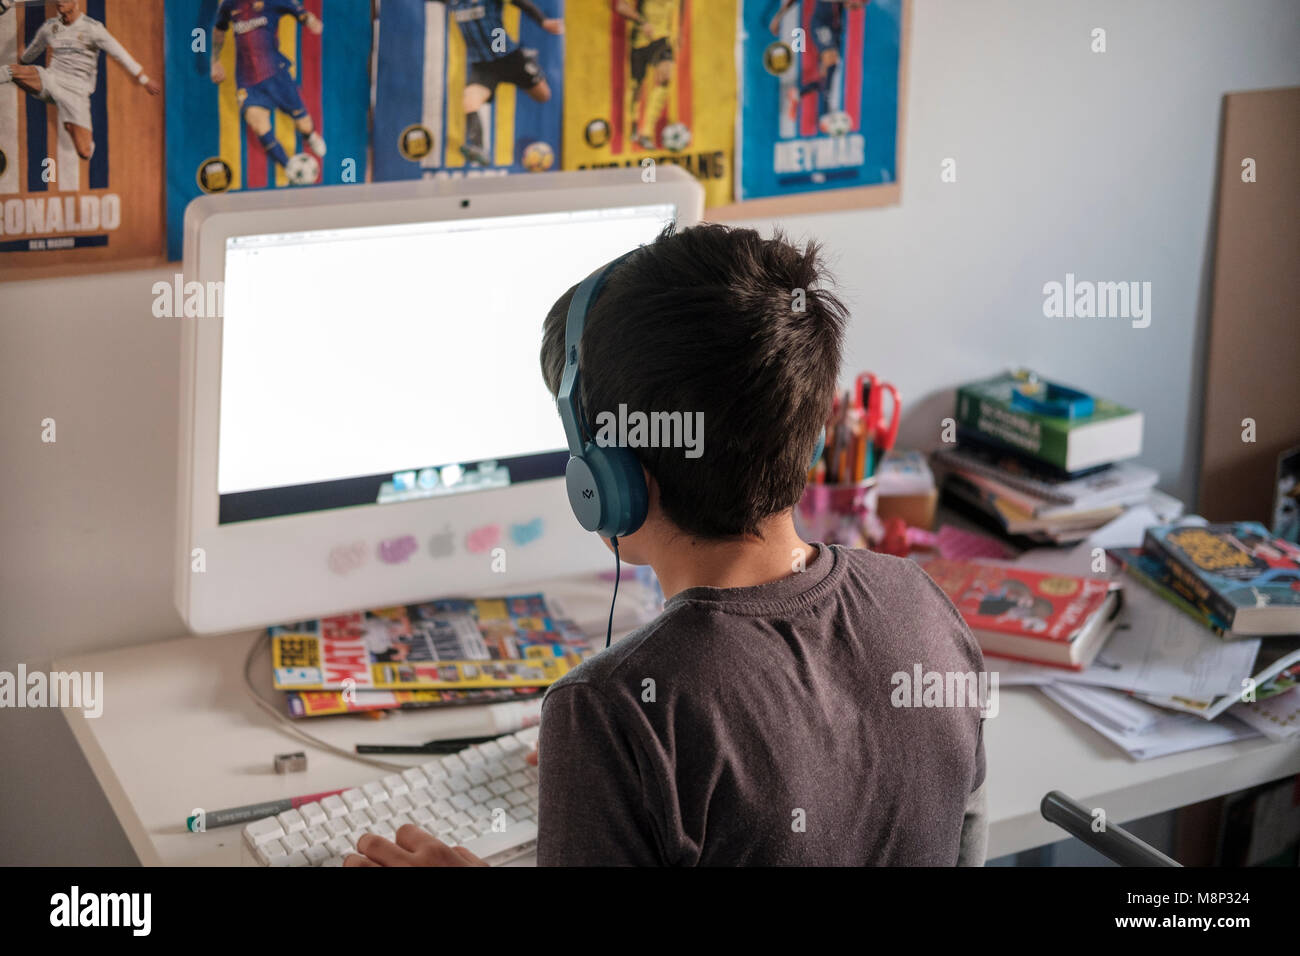 Surrey, UK,10 ans garçon sur ordinateur dans sa chambre - vue arrière Banque D'Images